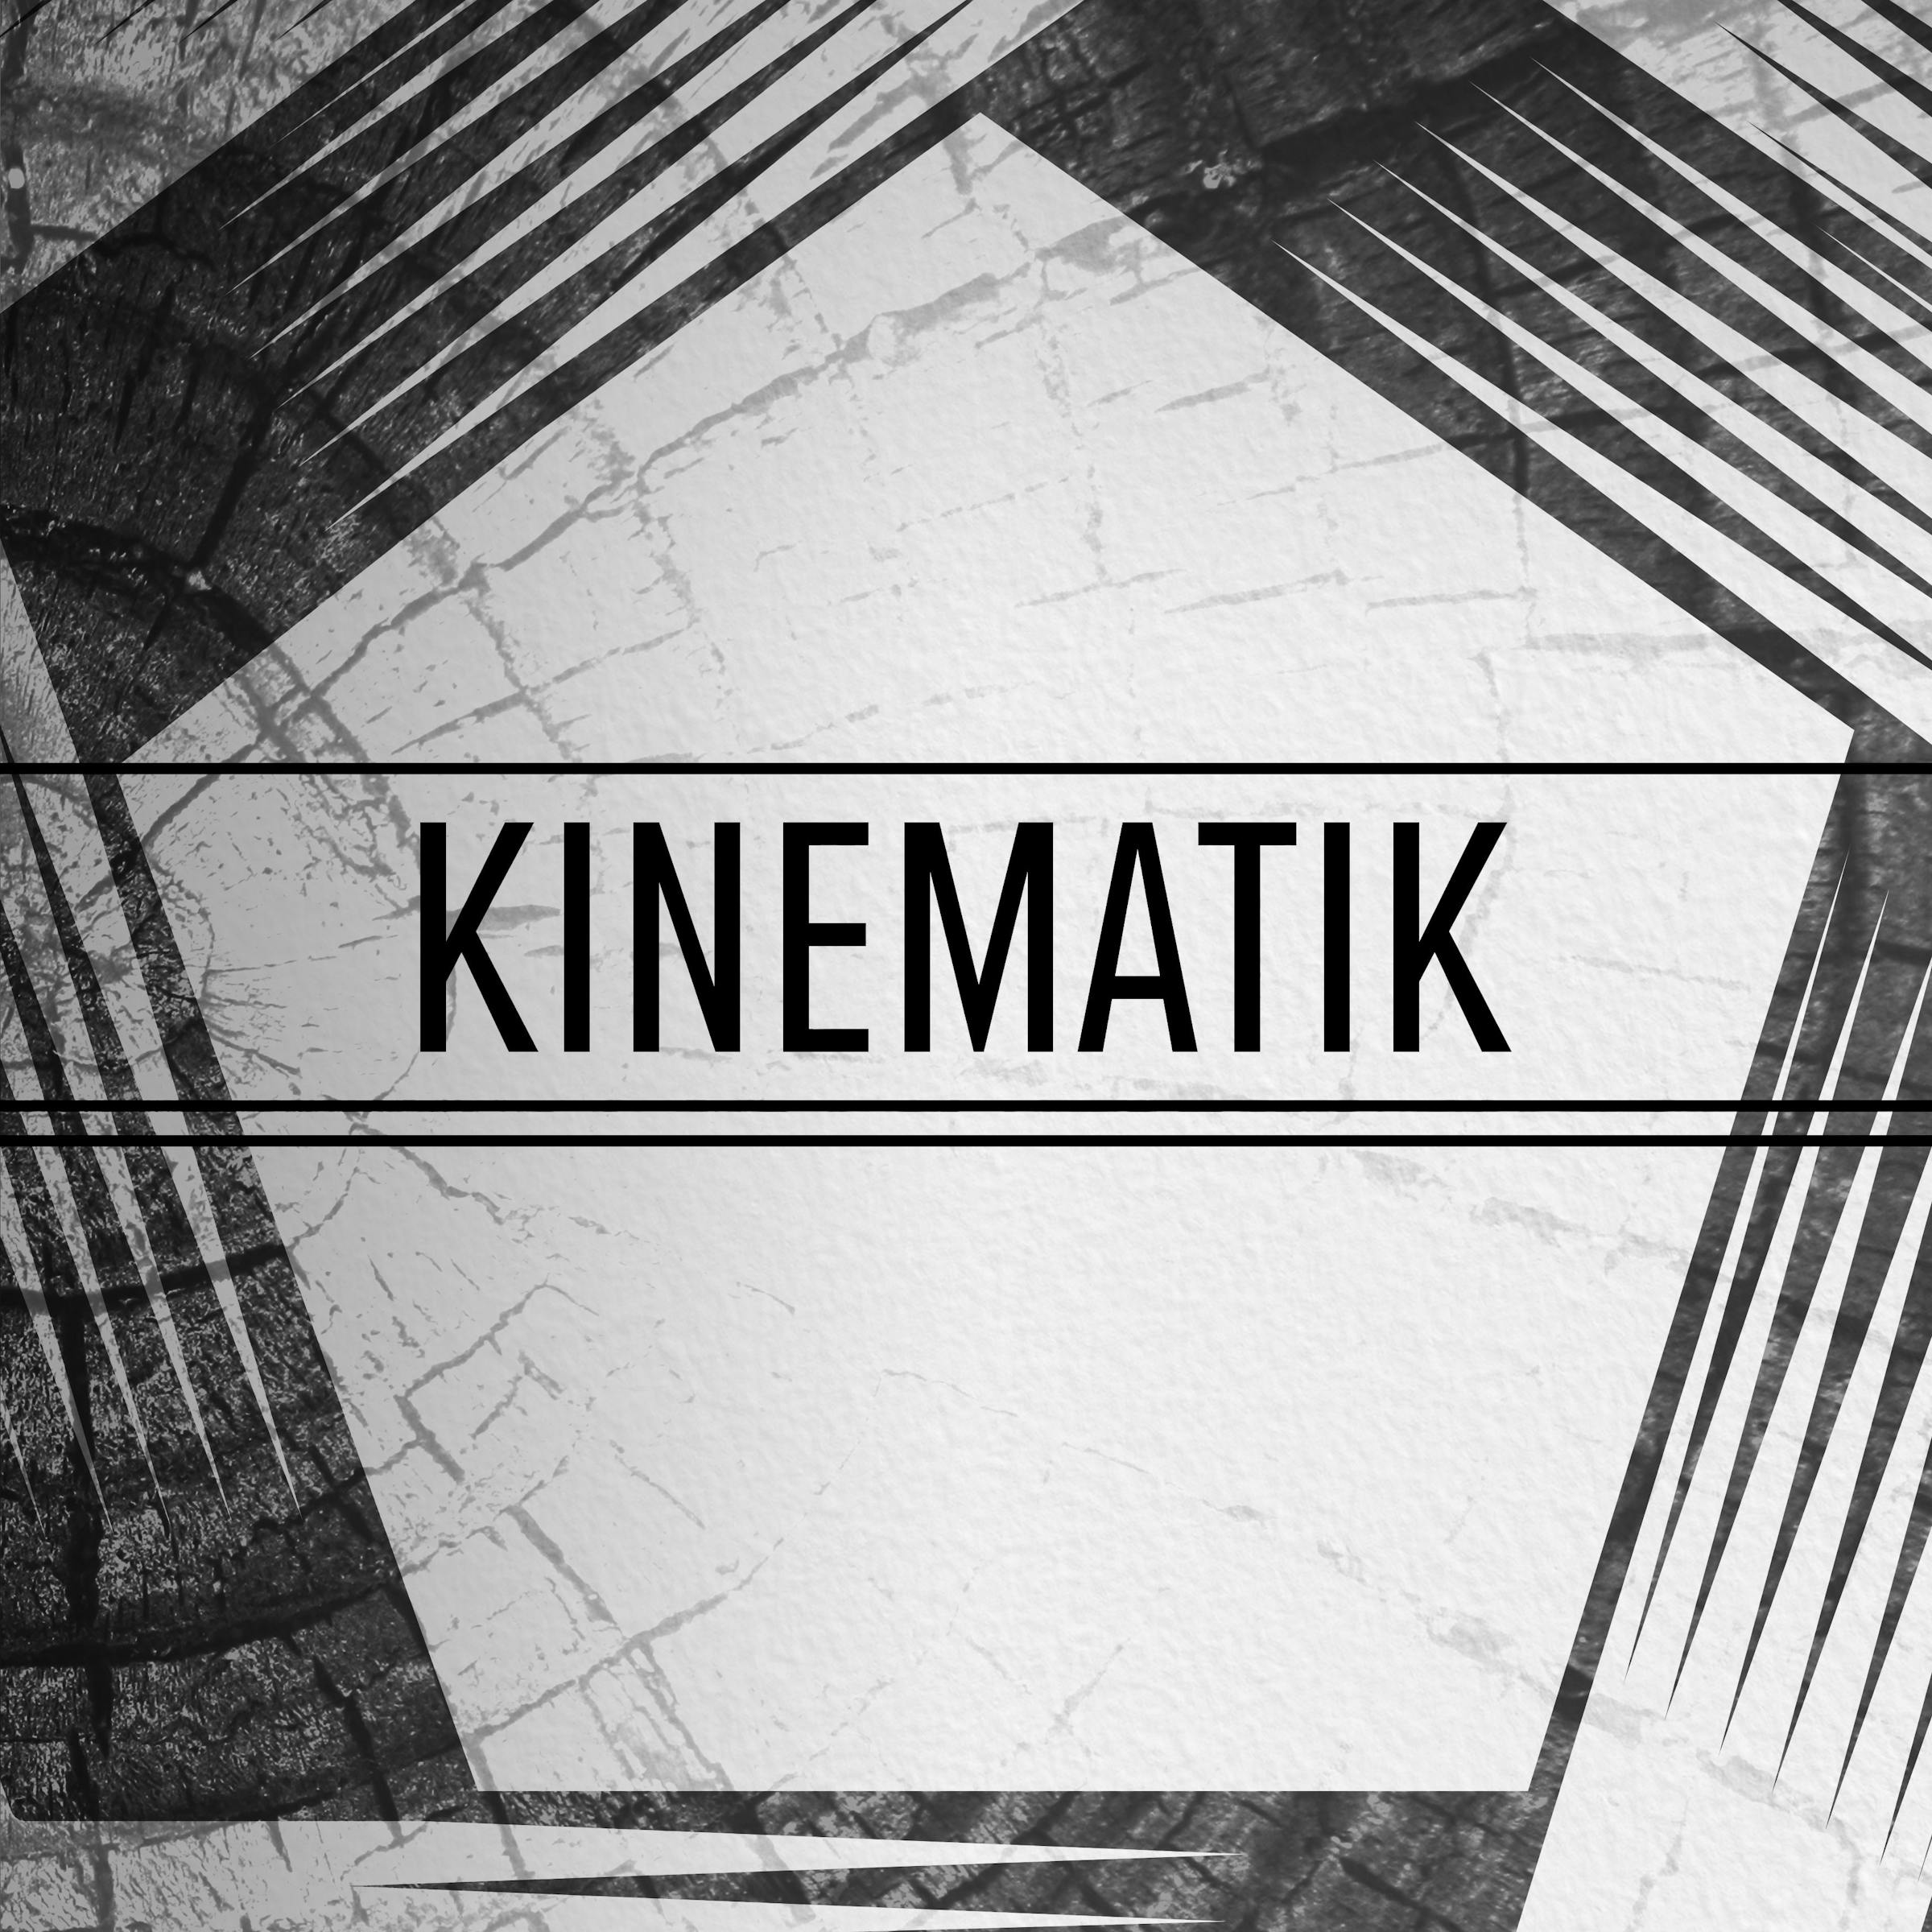 Kinematik product artwork